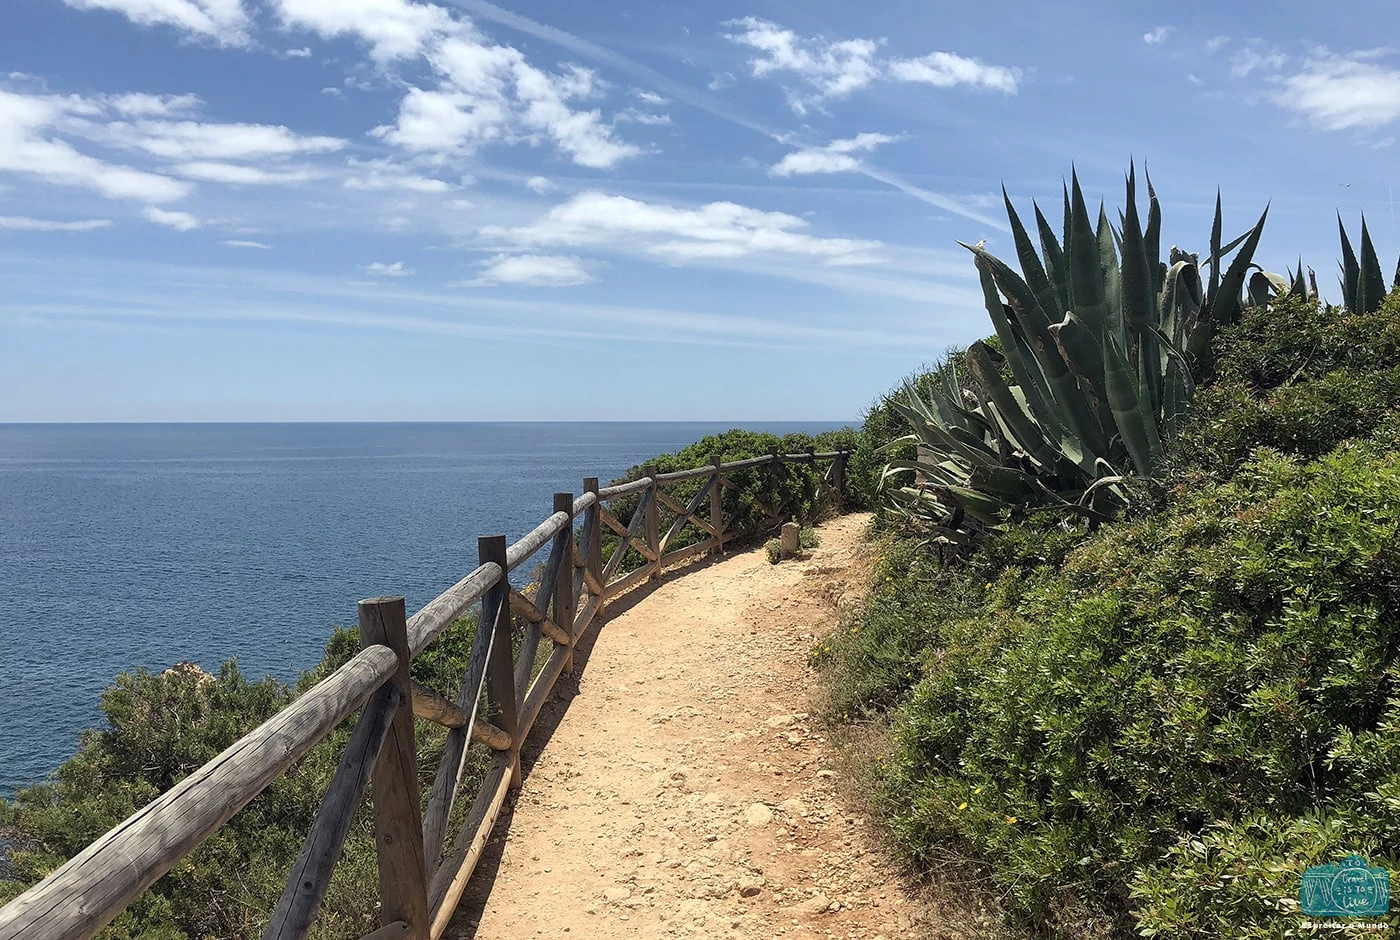 Percurso pedestre dos 7 vales suspensos (Algarve)